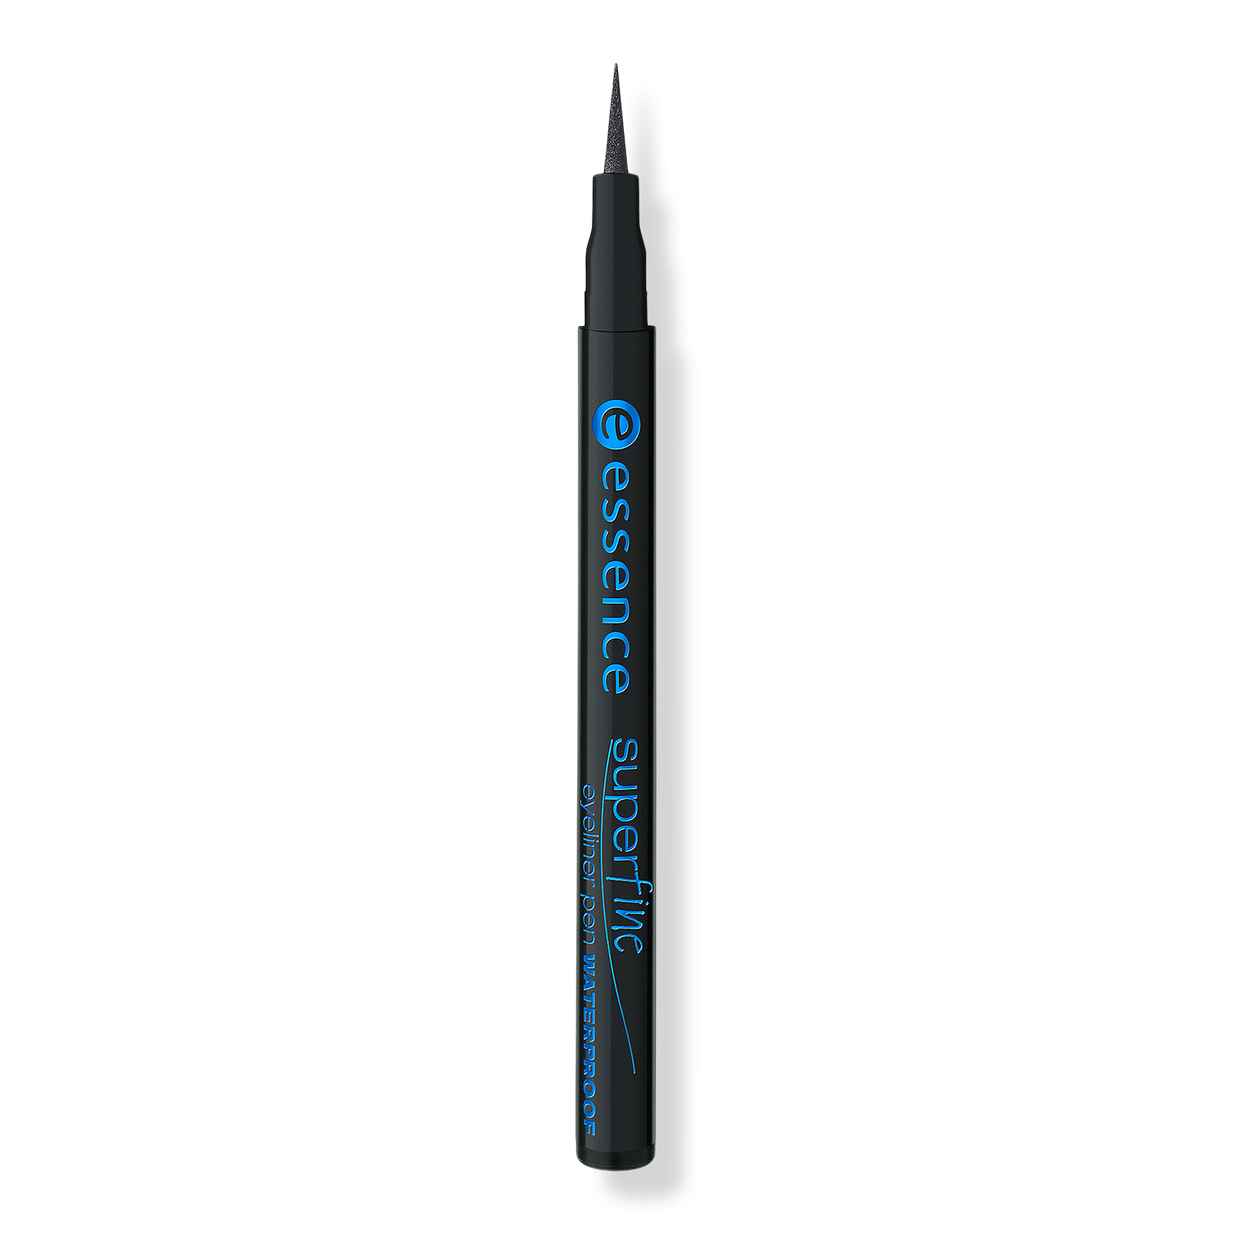 Superfine Waterproof | Essence Ulta Beauty Pen Eyeliner 